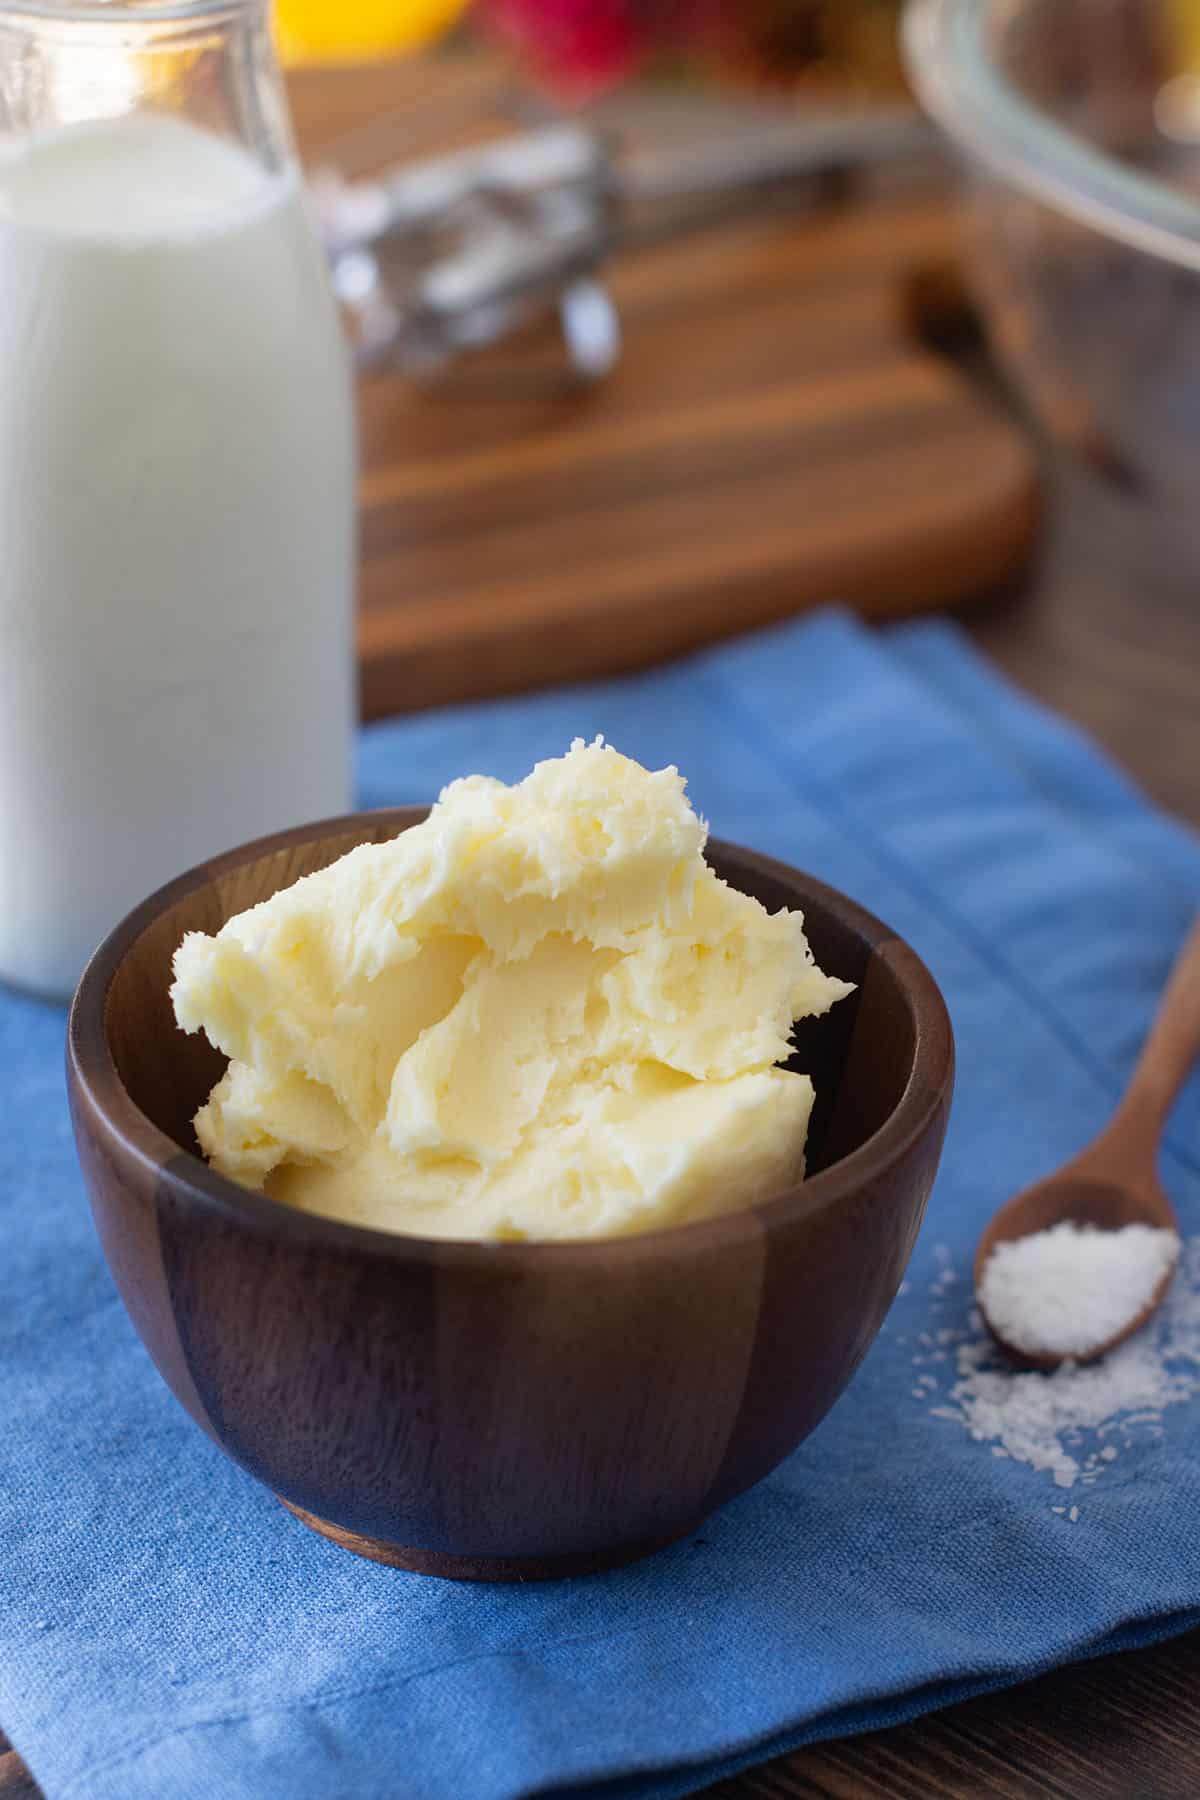 Homemade Butter Using Cream and Salt